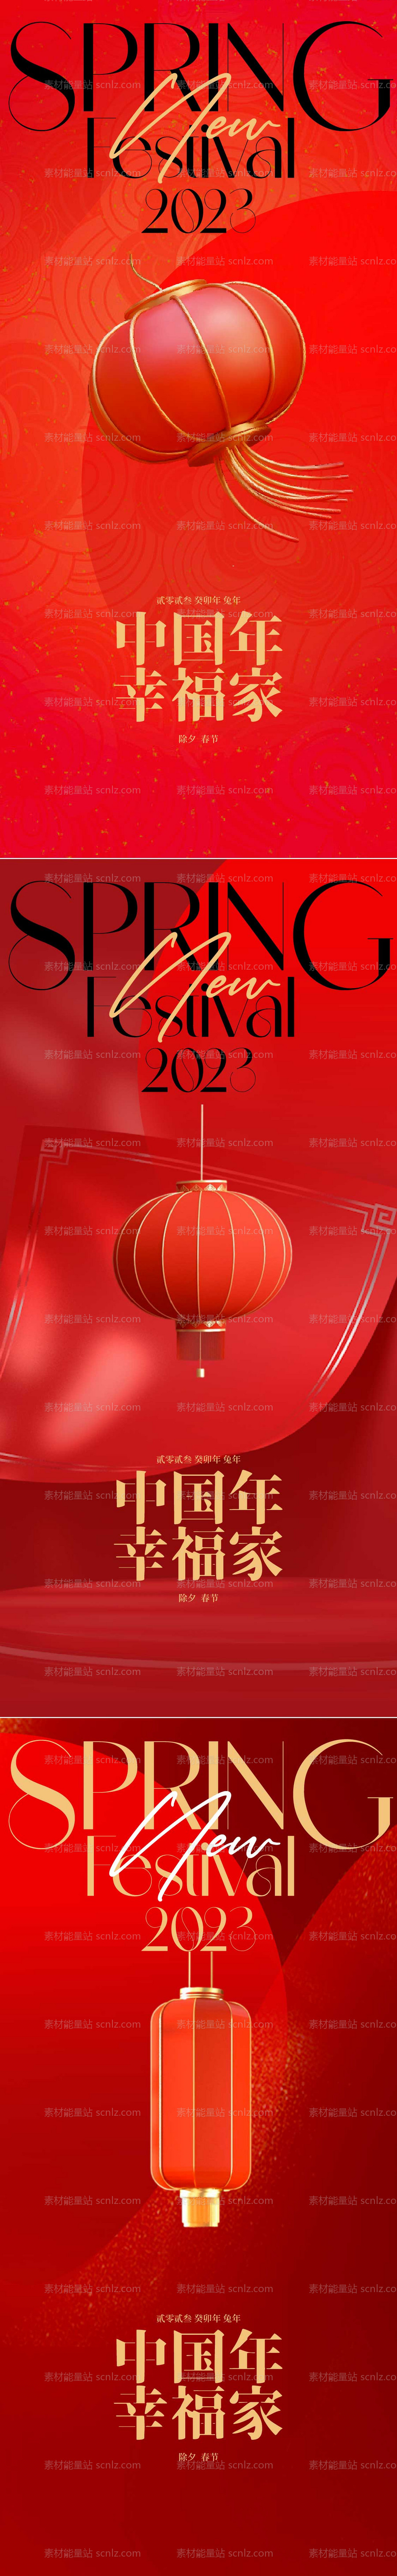 素材能量站-中国新年春节海报